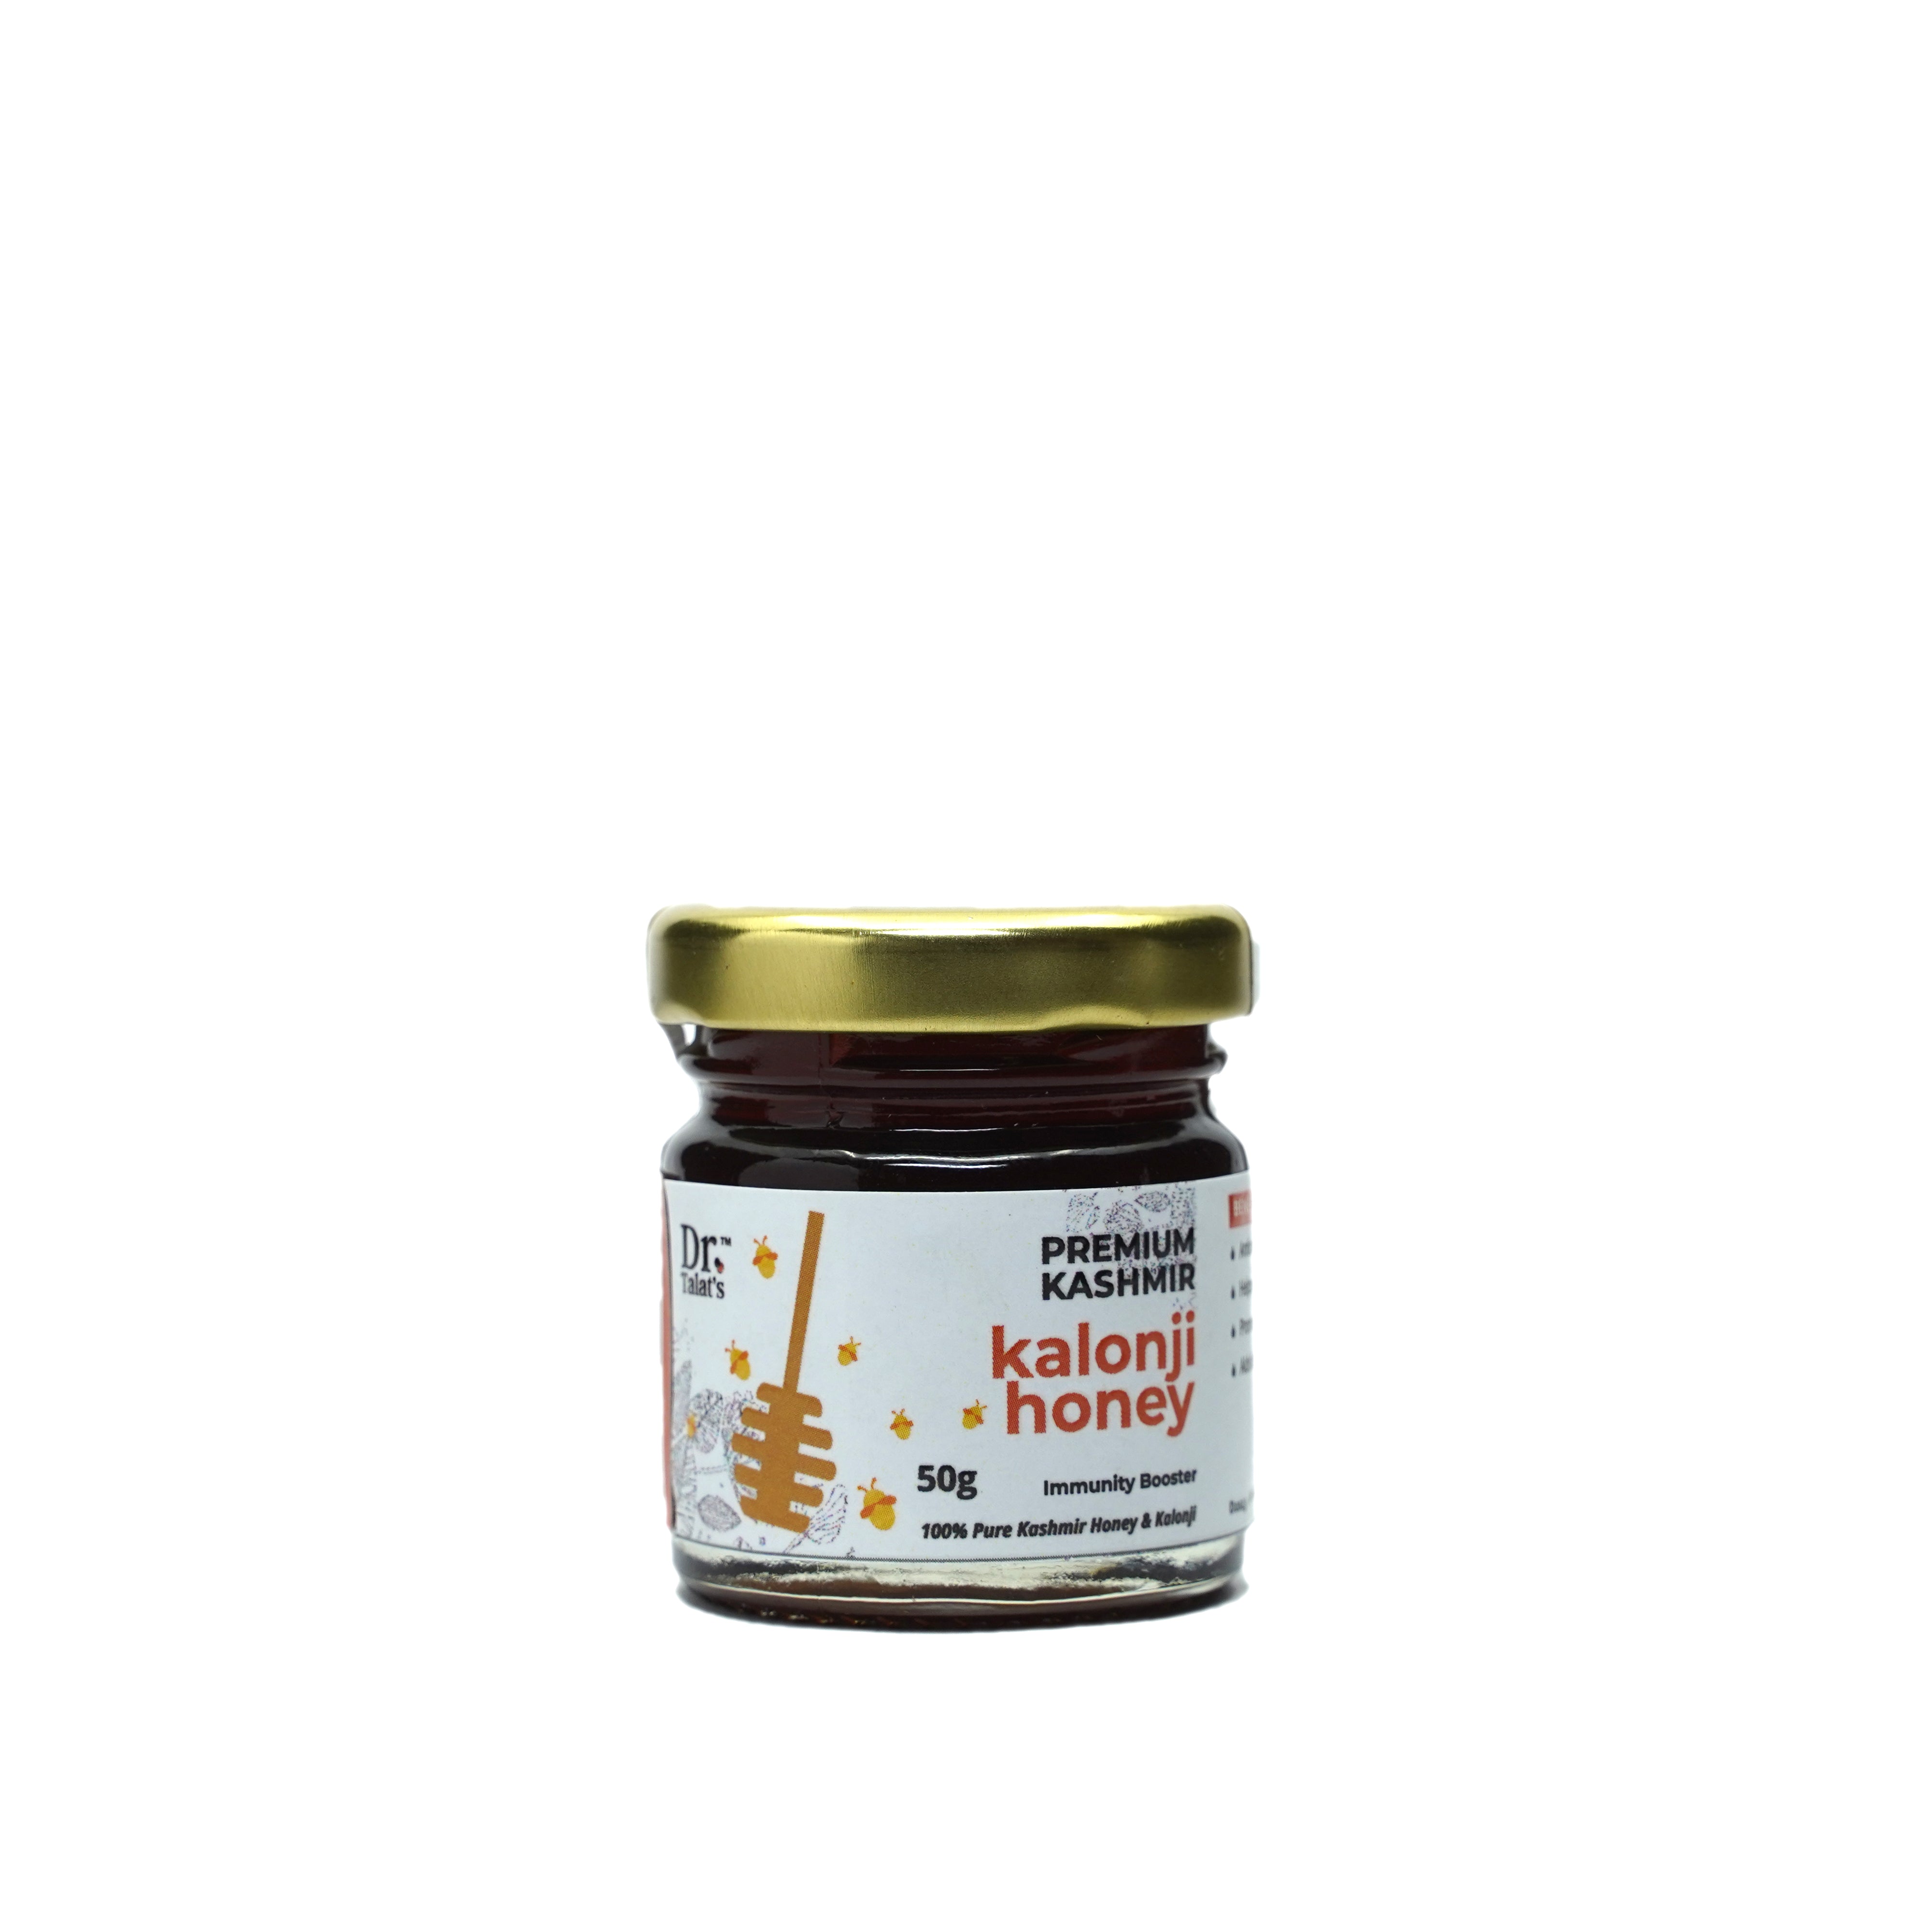 Premium Kashmir Kalonji Honey